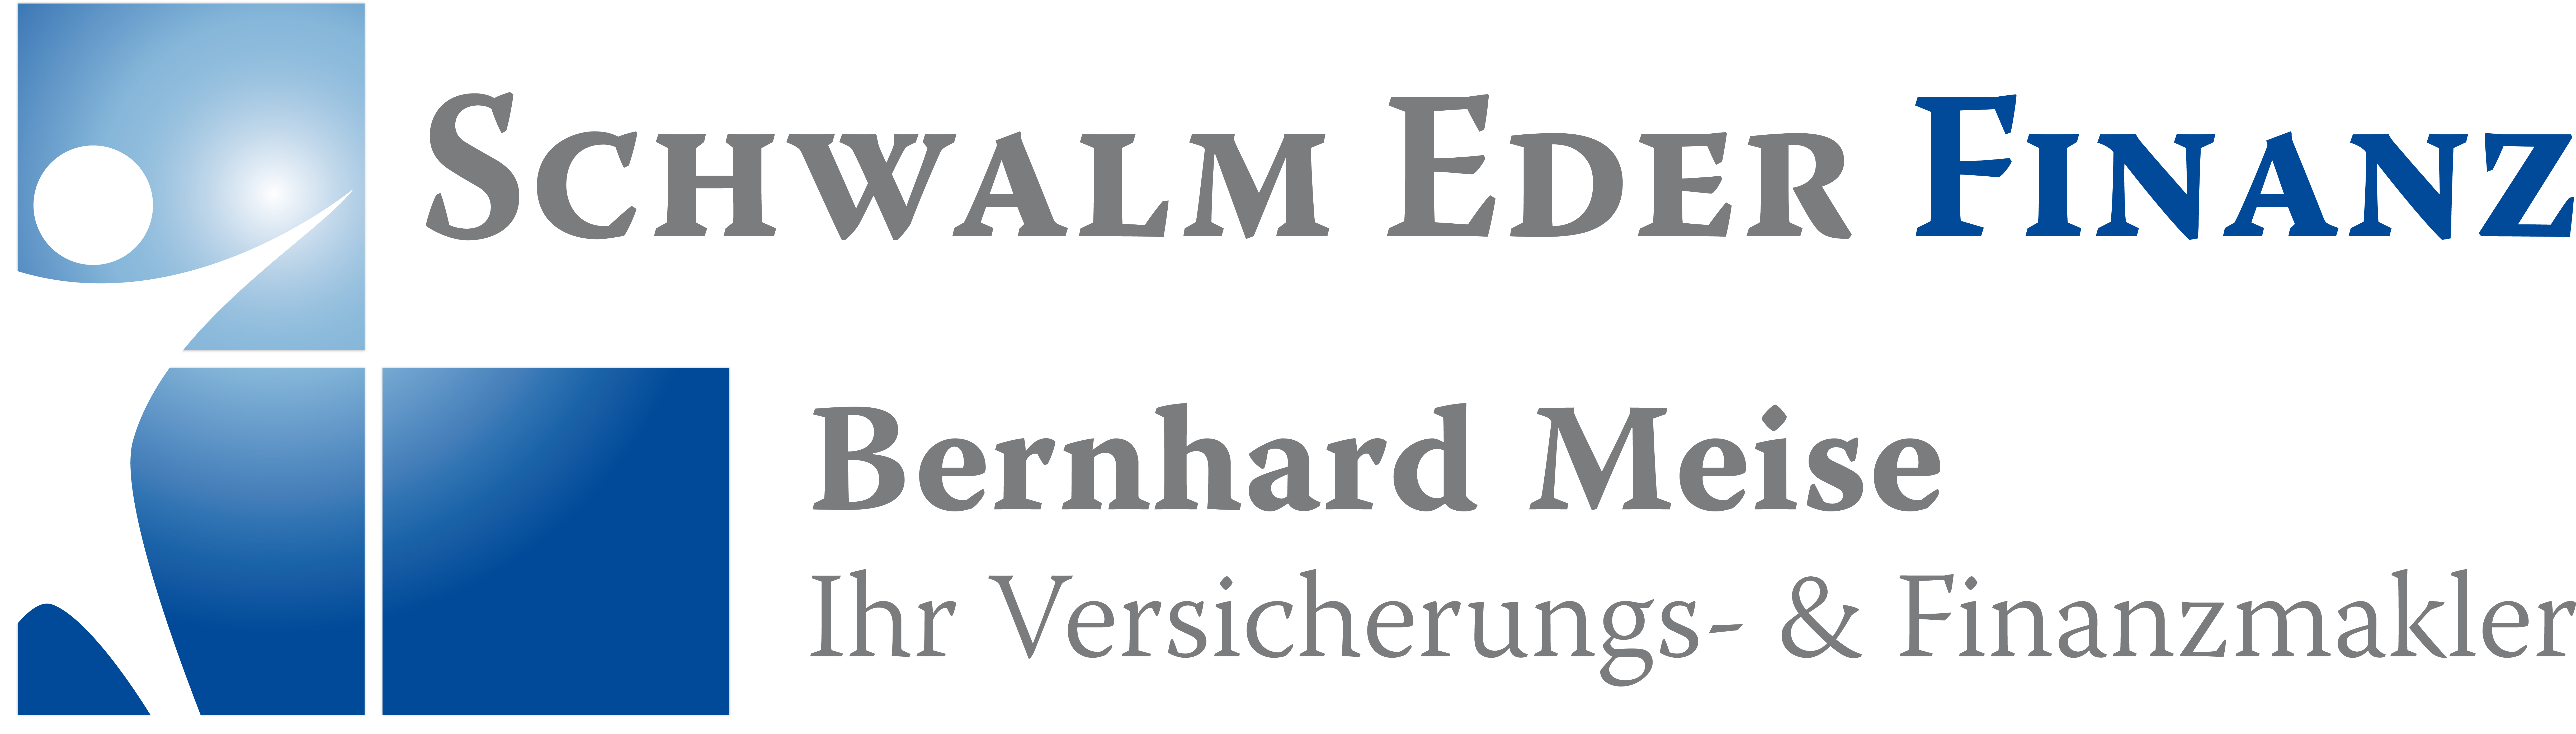  Bernhard Meise - Schwalm Eder Finanz